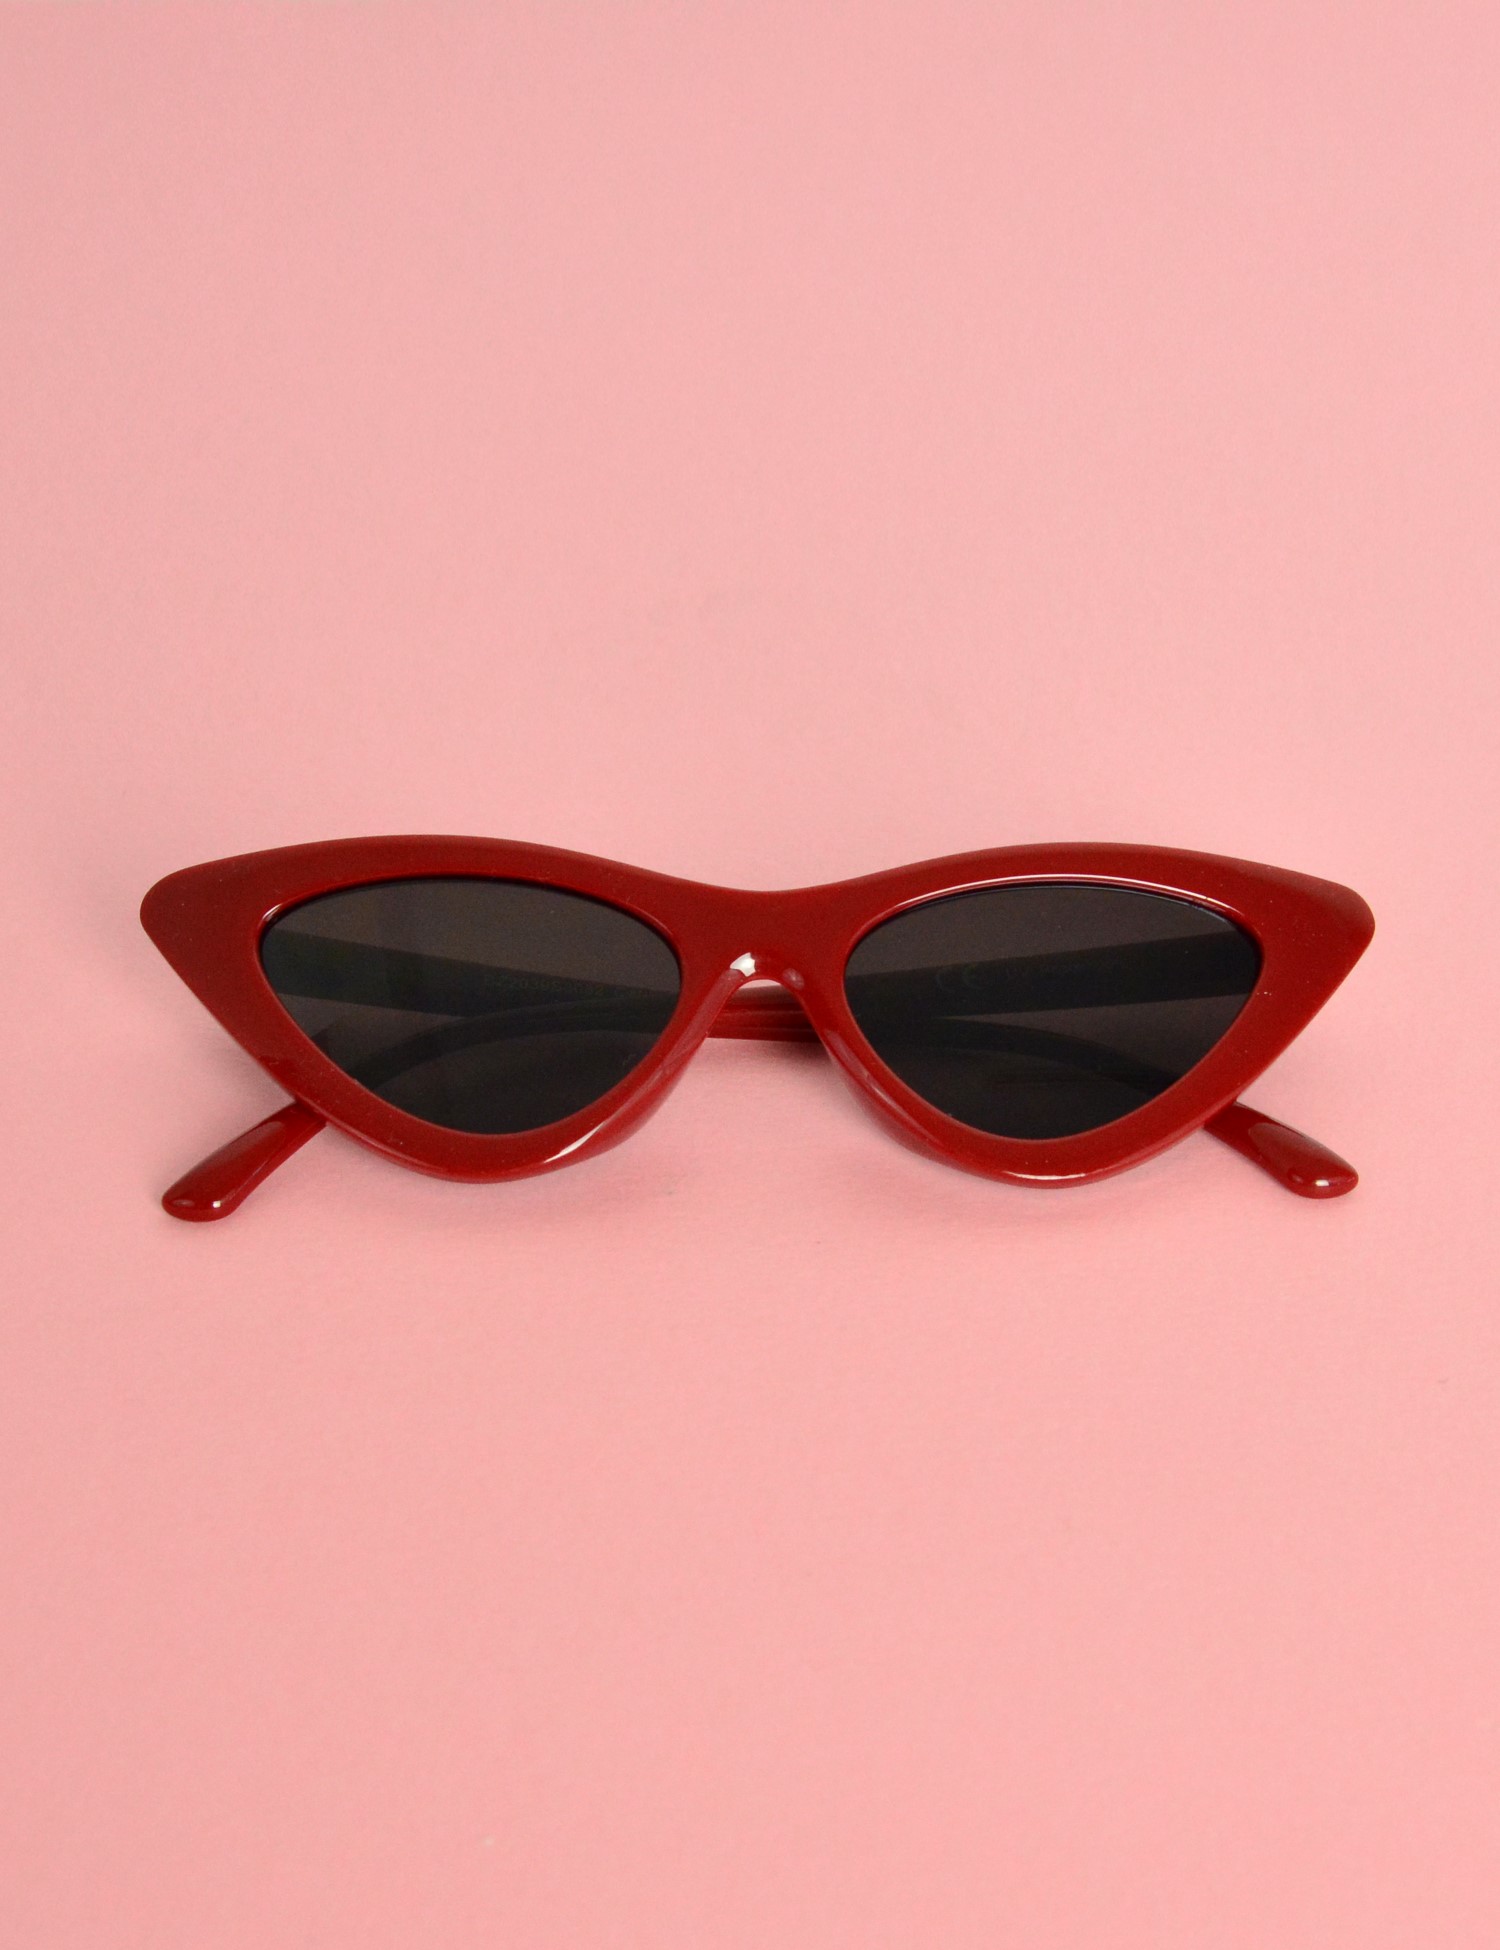 Γυναικεία γυαλιά cat eye κοκκάλινα μπορντό Premium S3082F